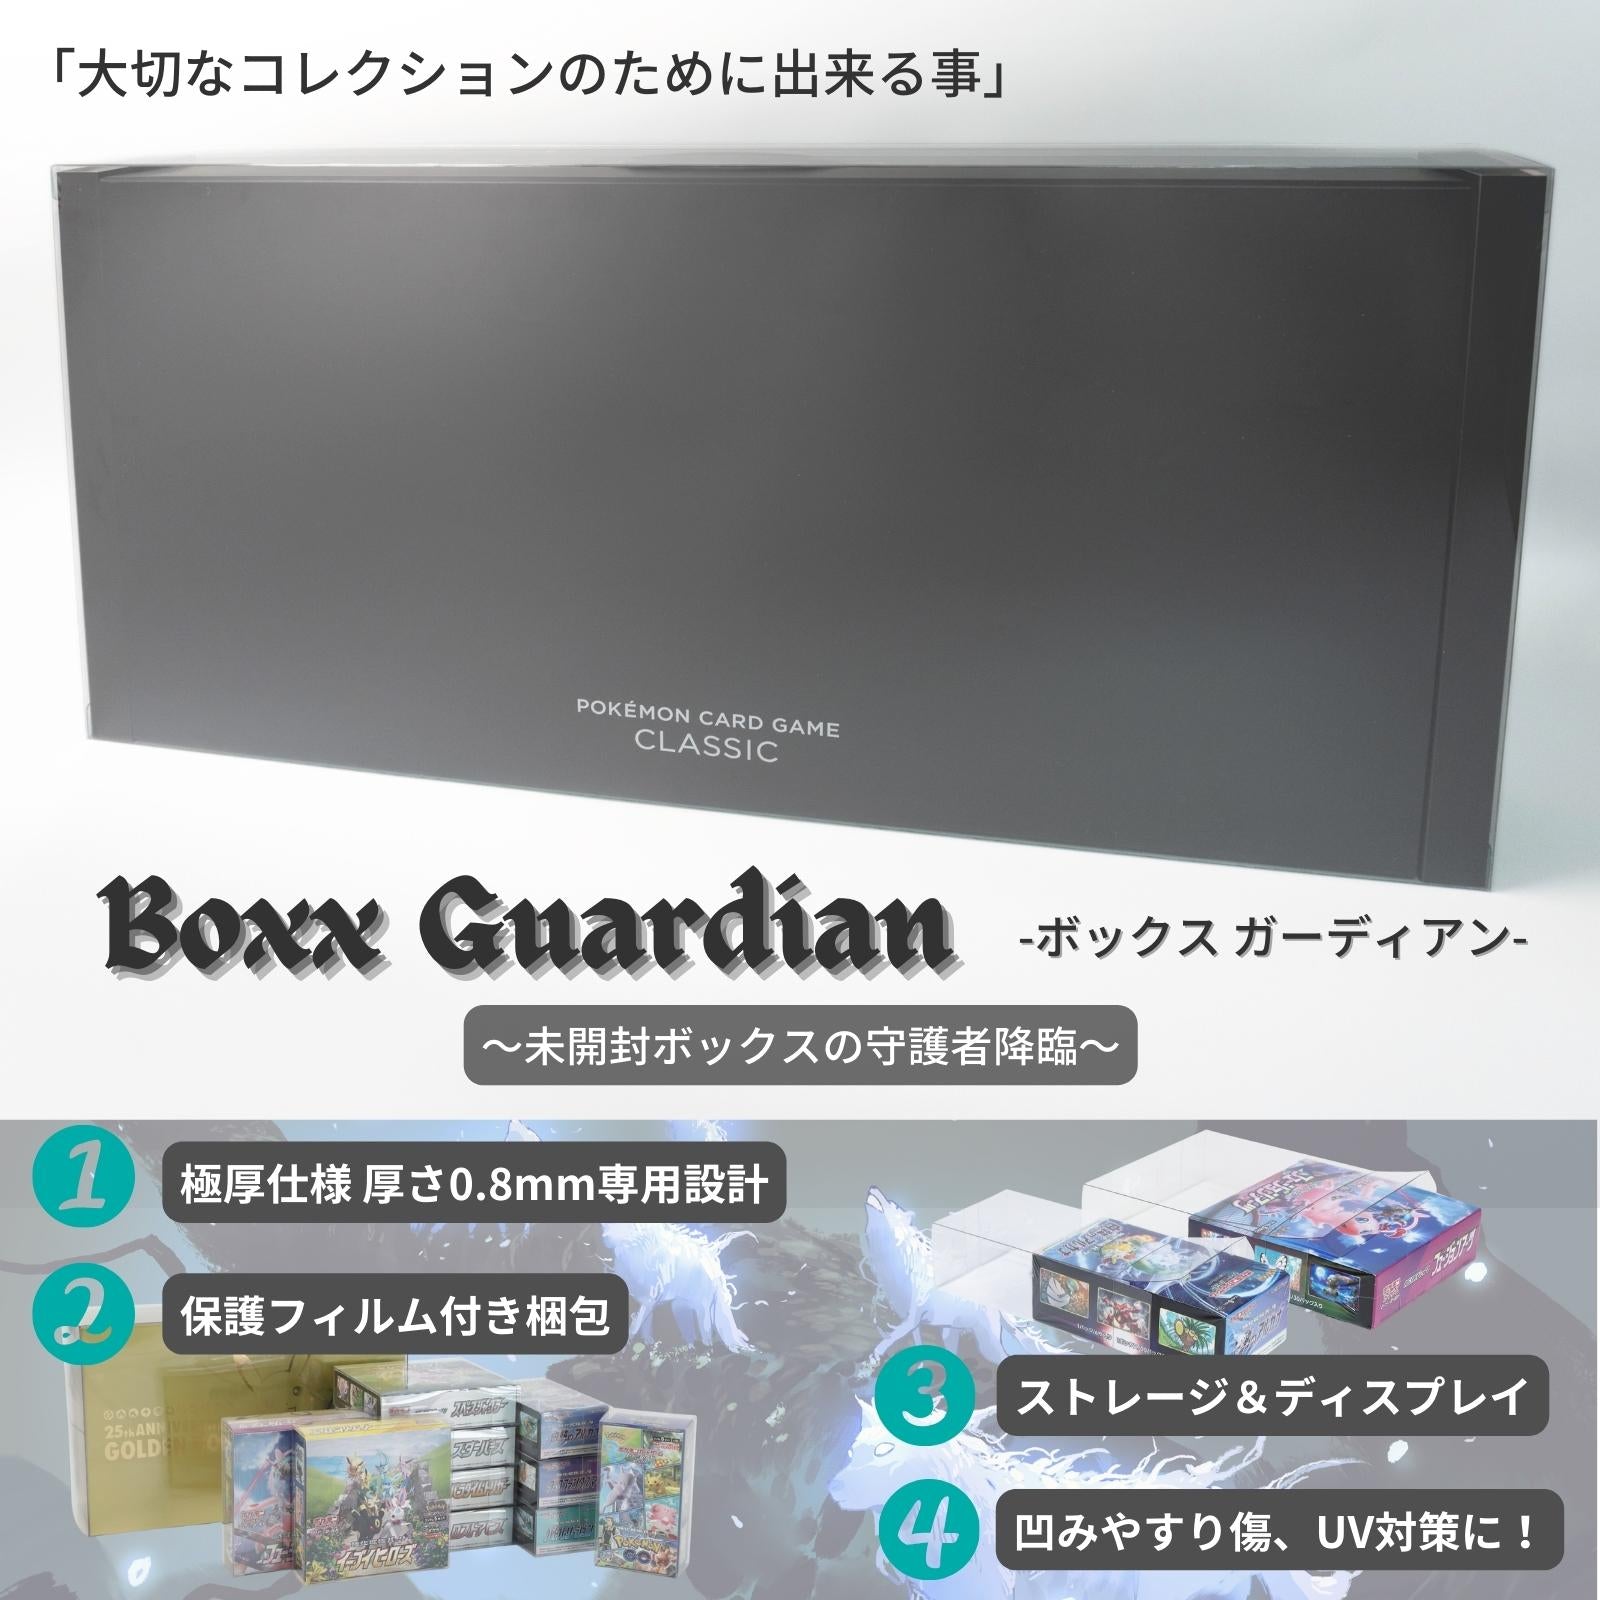 Boxx Guardian ポケモンカードBOX用 ポケモンカードゲーム Classic サイズ